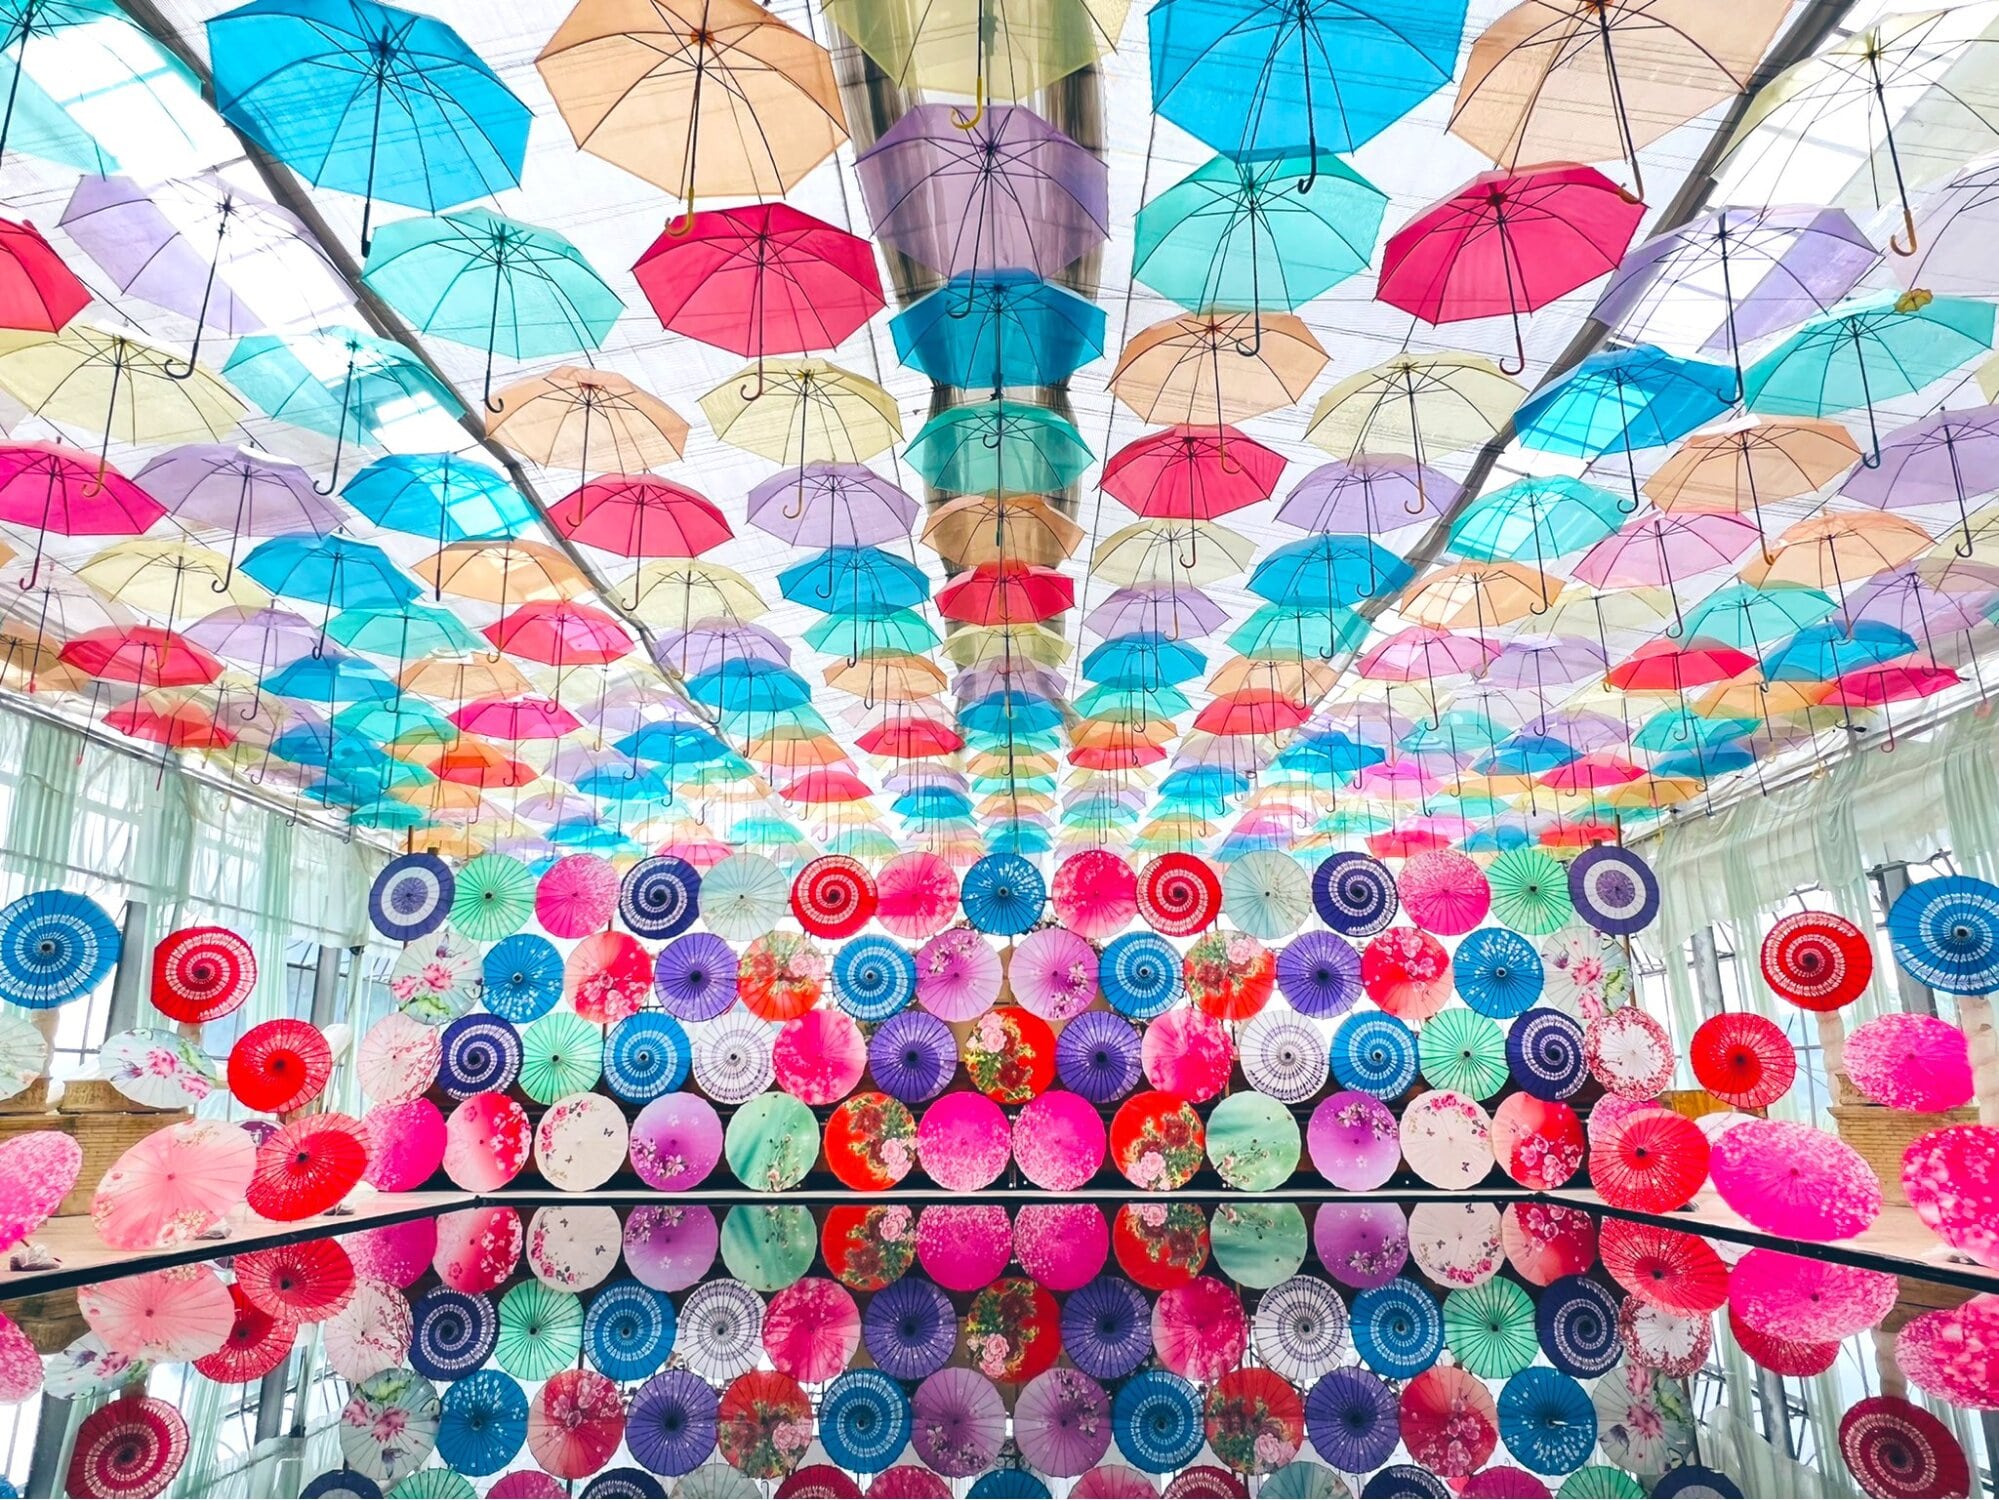 Inawashiro Herb Garden - Umbrella sky